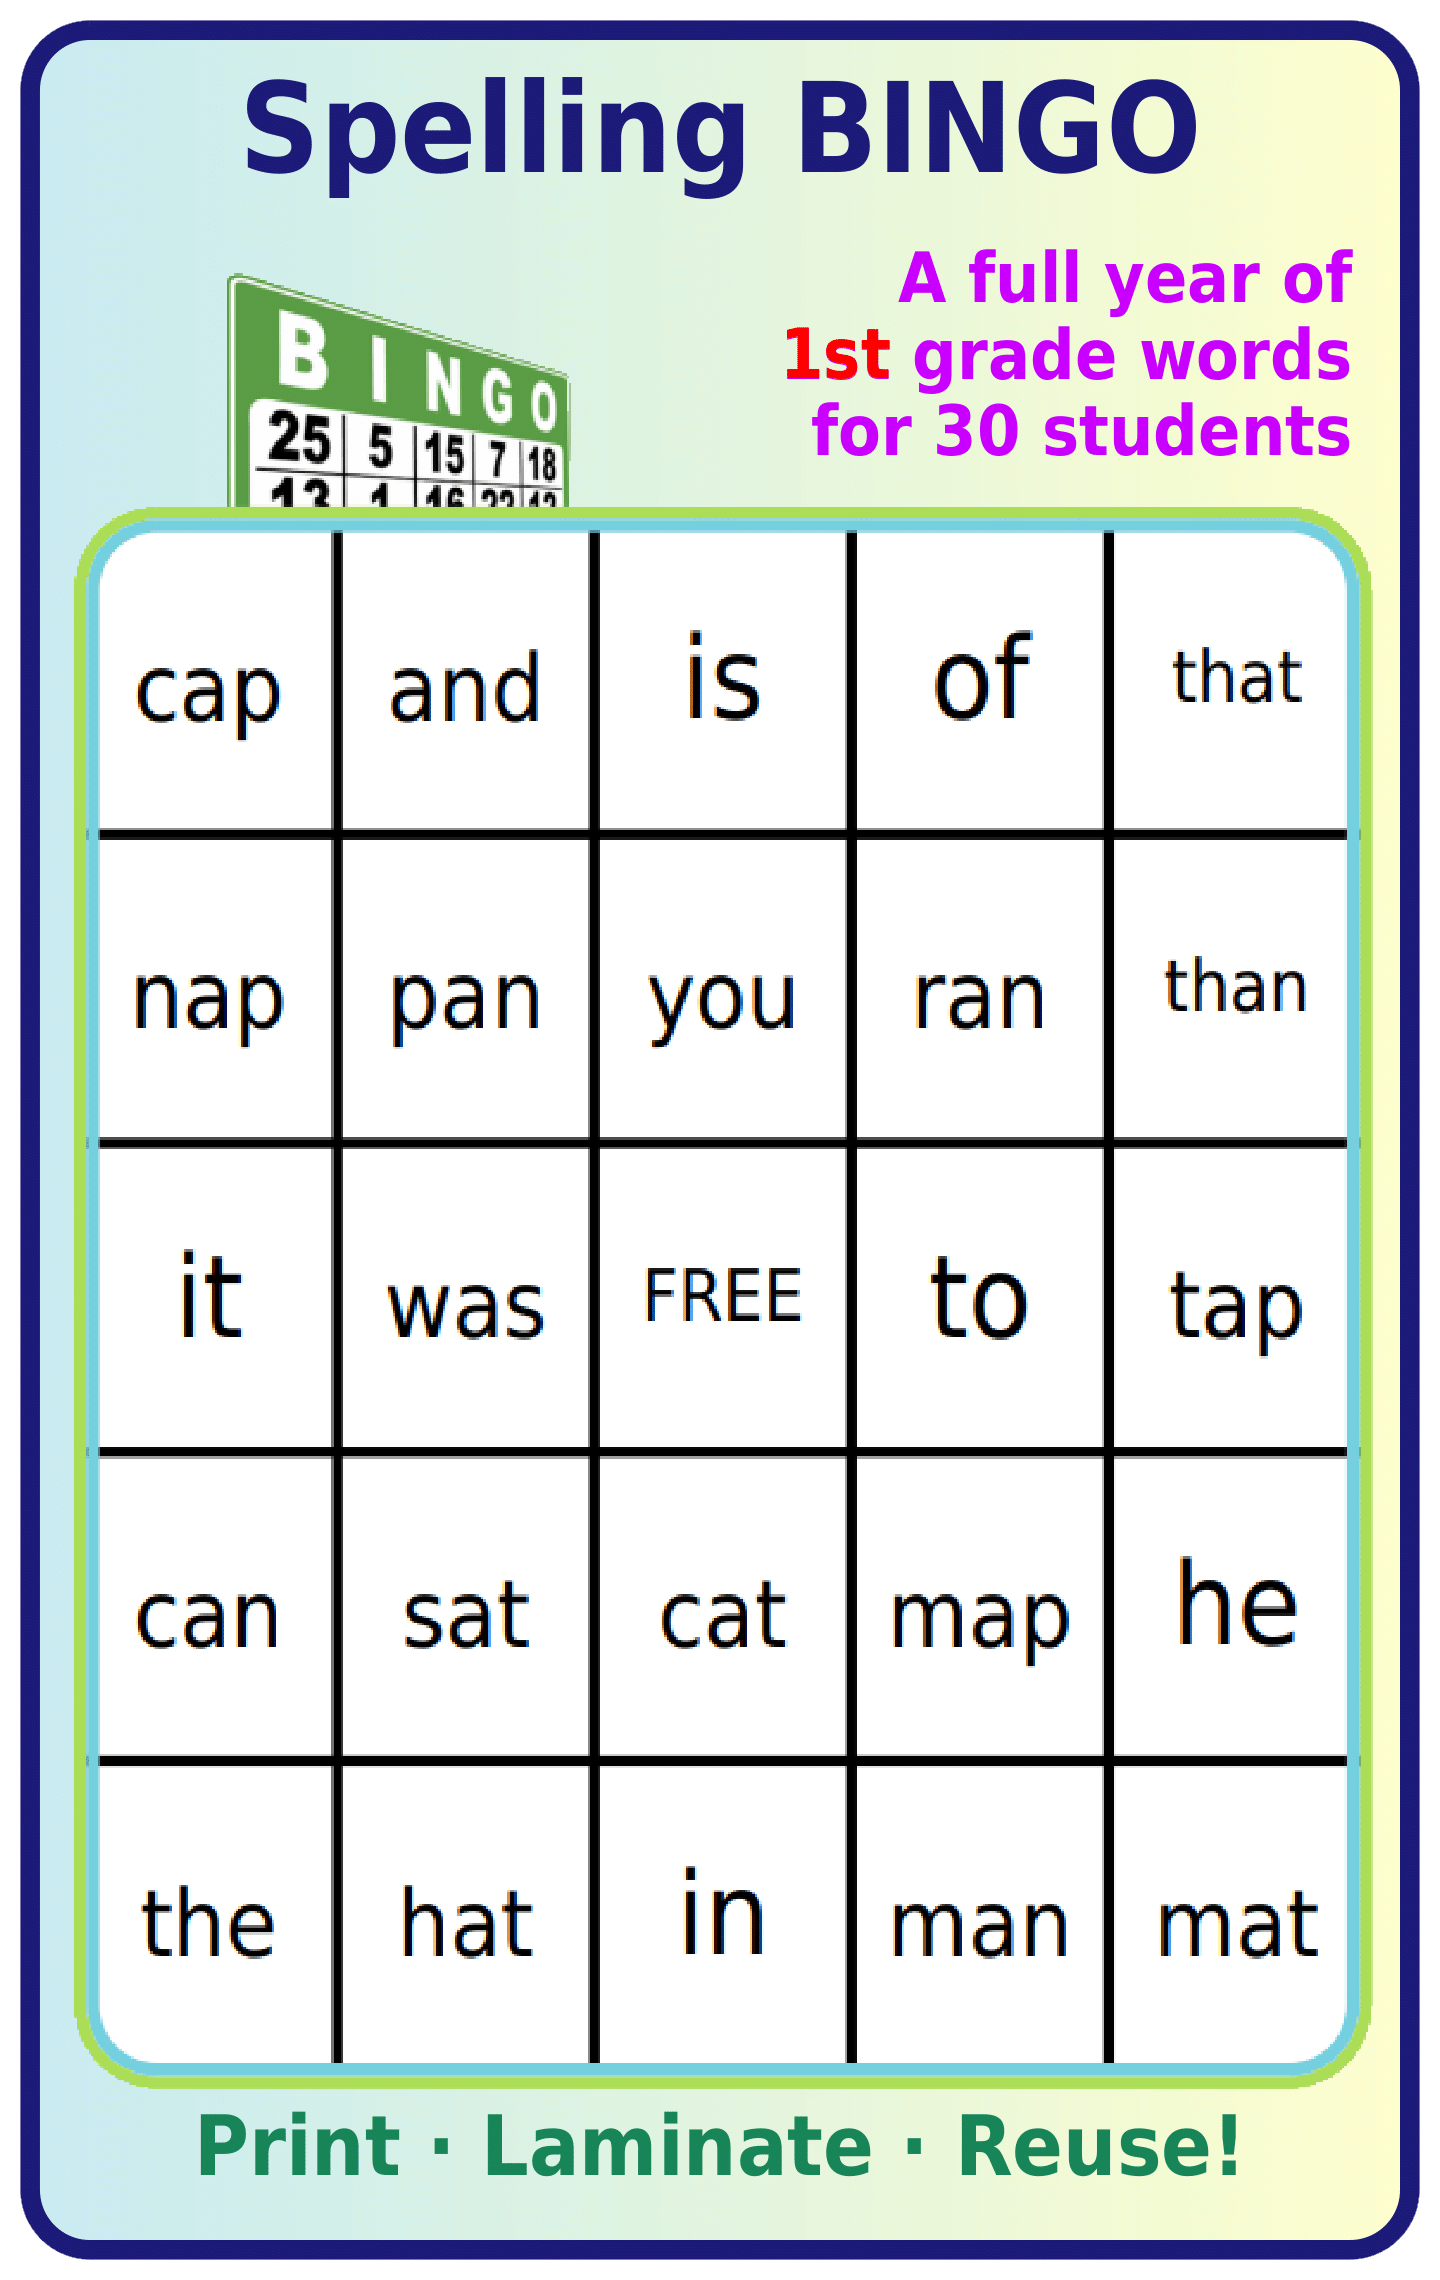 Bingo board with 1st grade spelling words